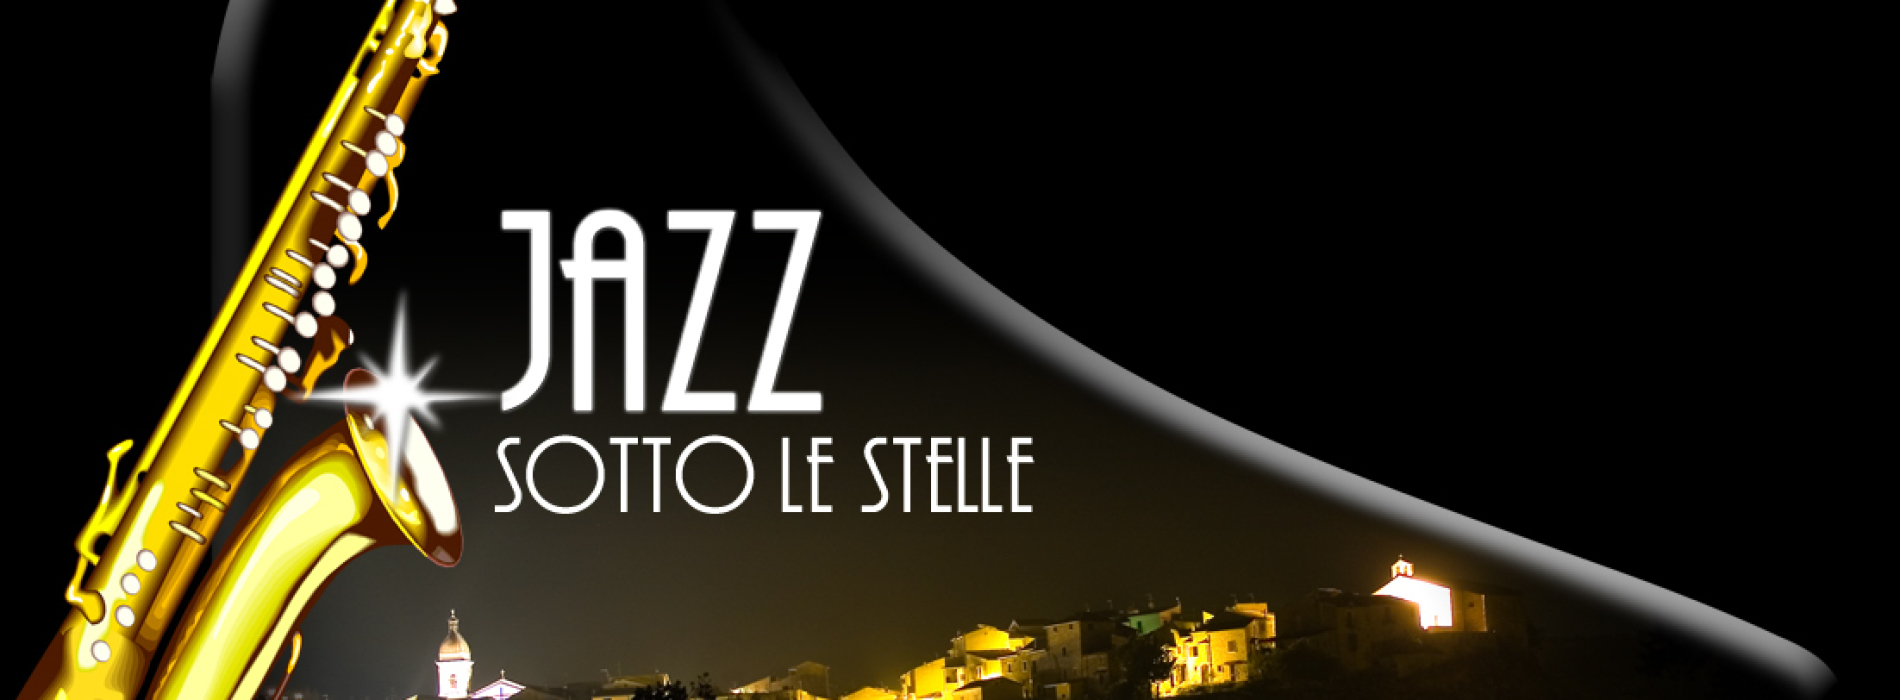 A Pietrelcina ad agosto c’è il jazz sotto le stelle. Protagonista la voce